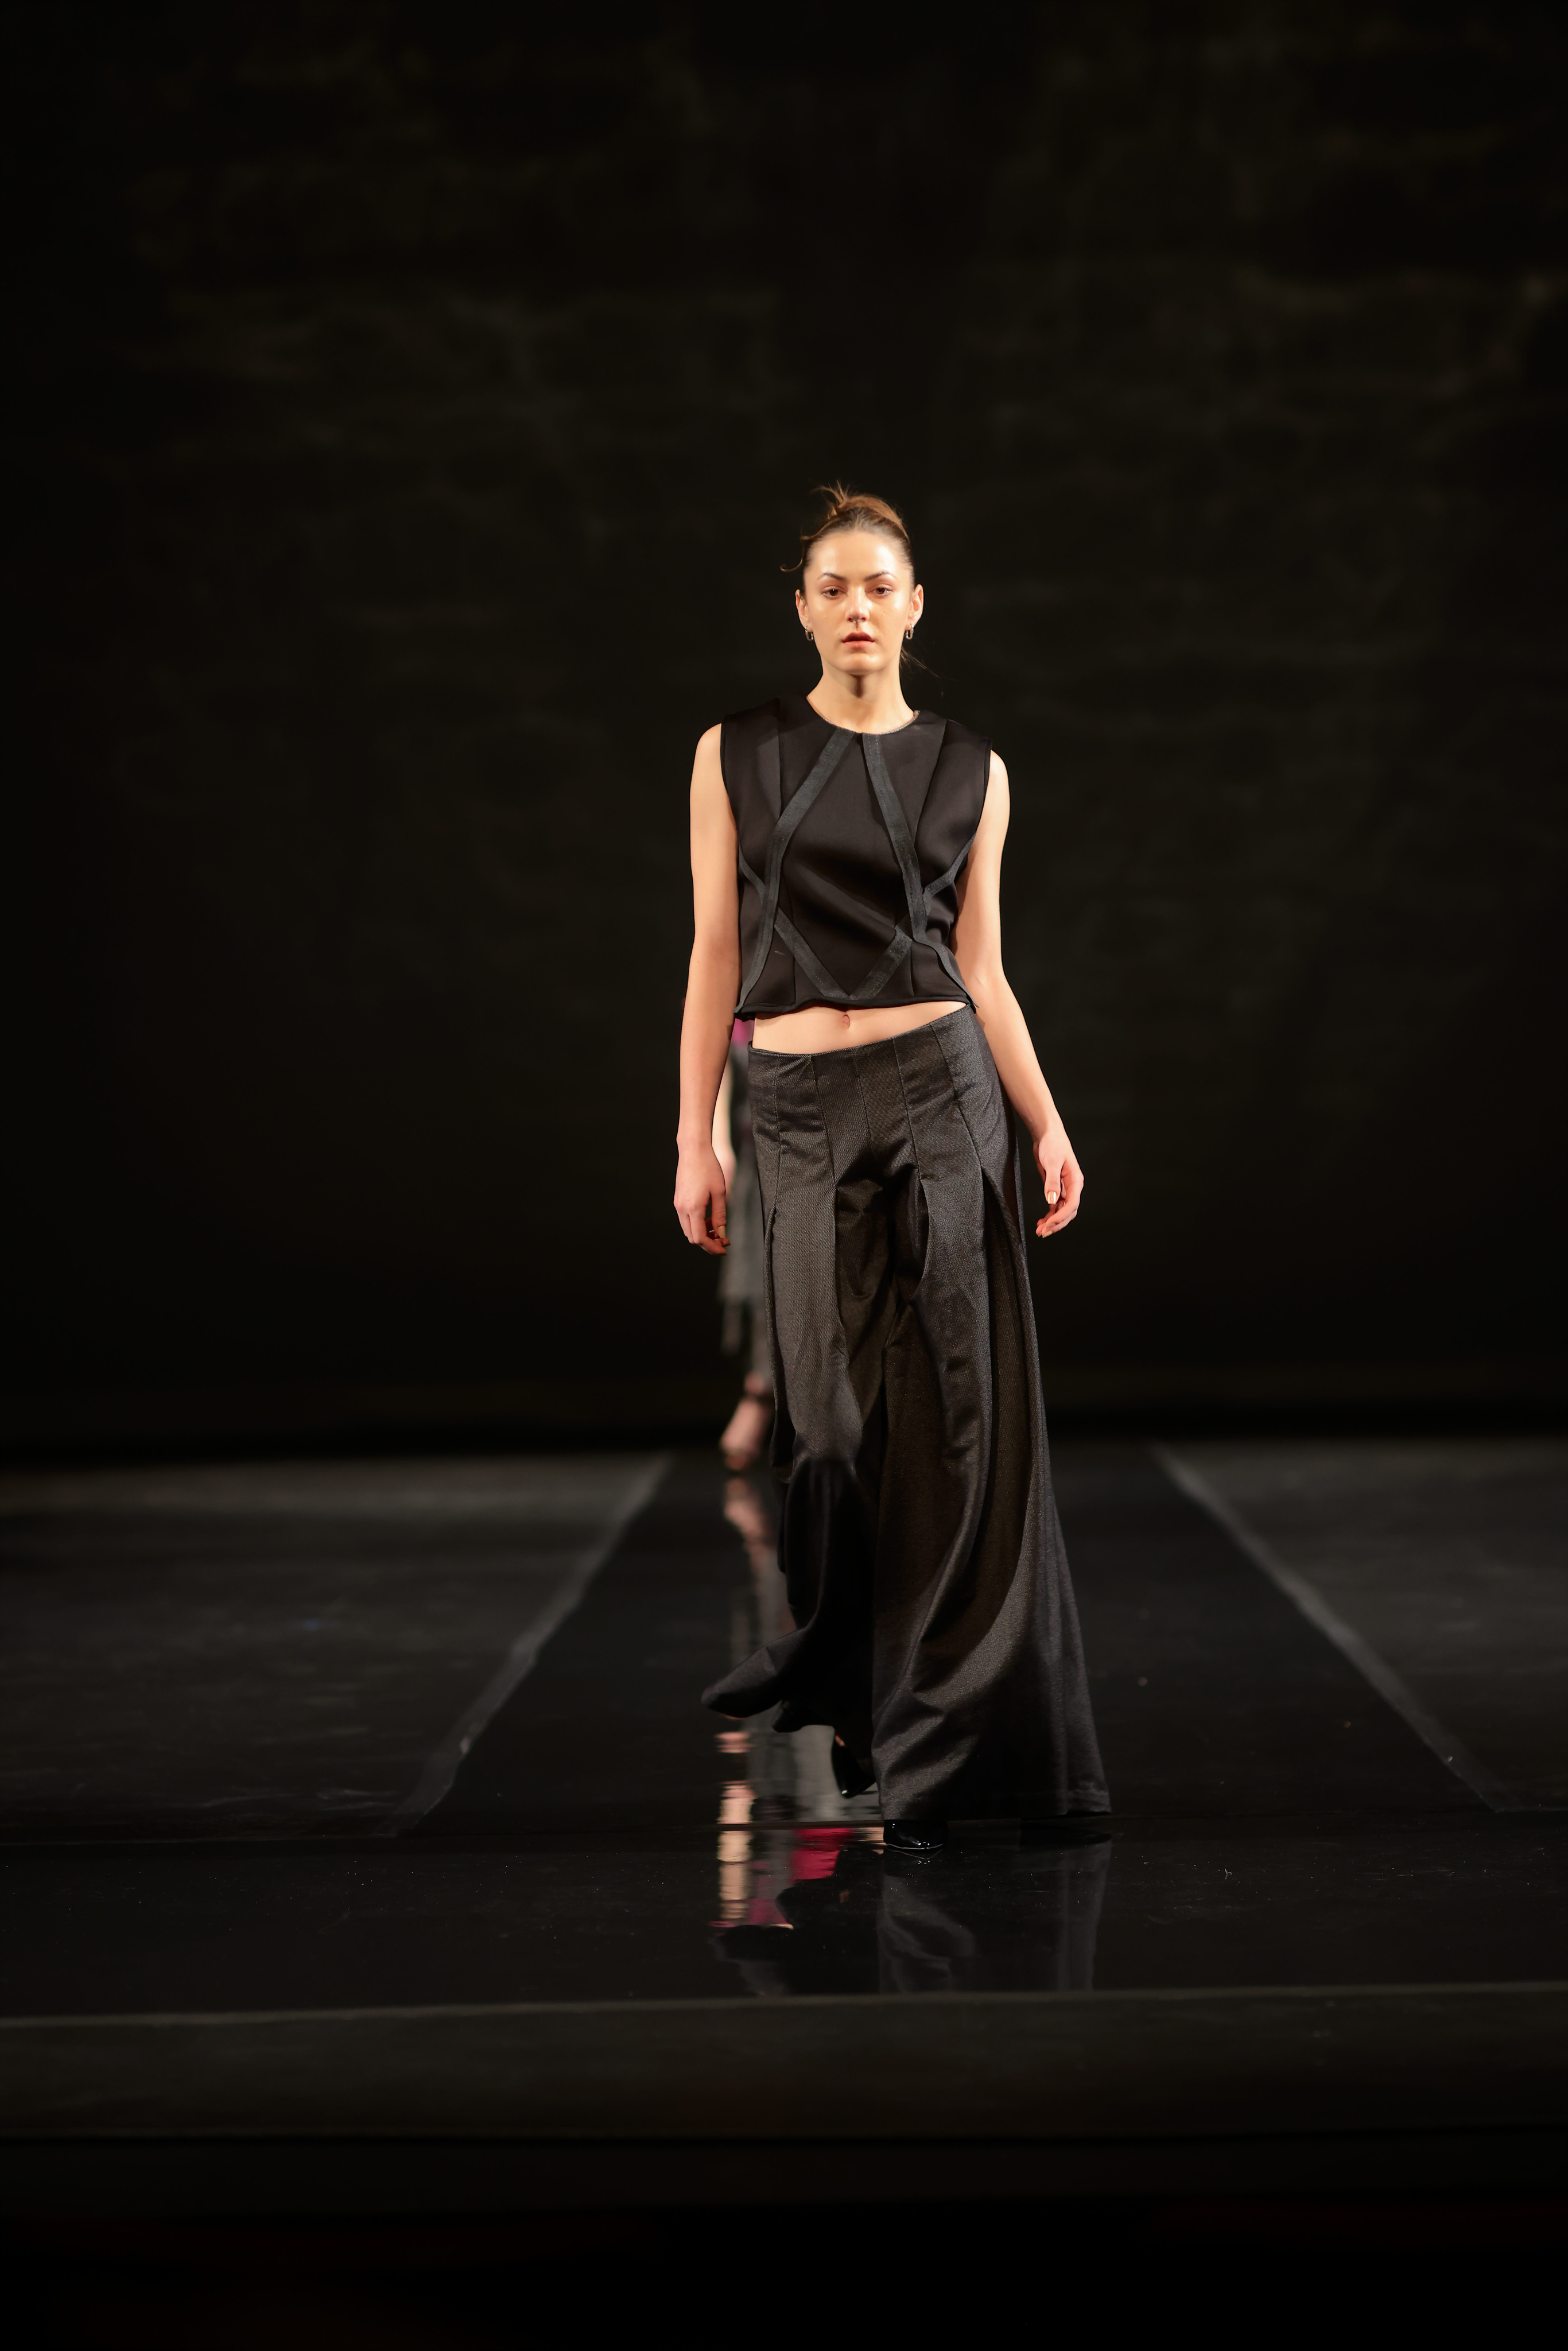 Model walking down runway in a all black two-piece dress.